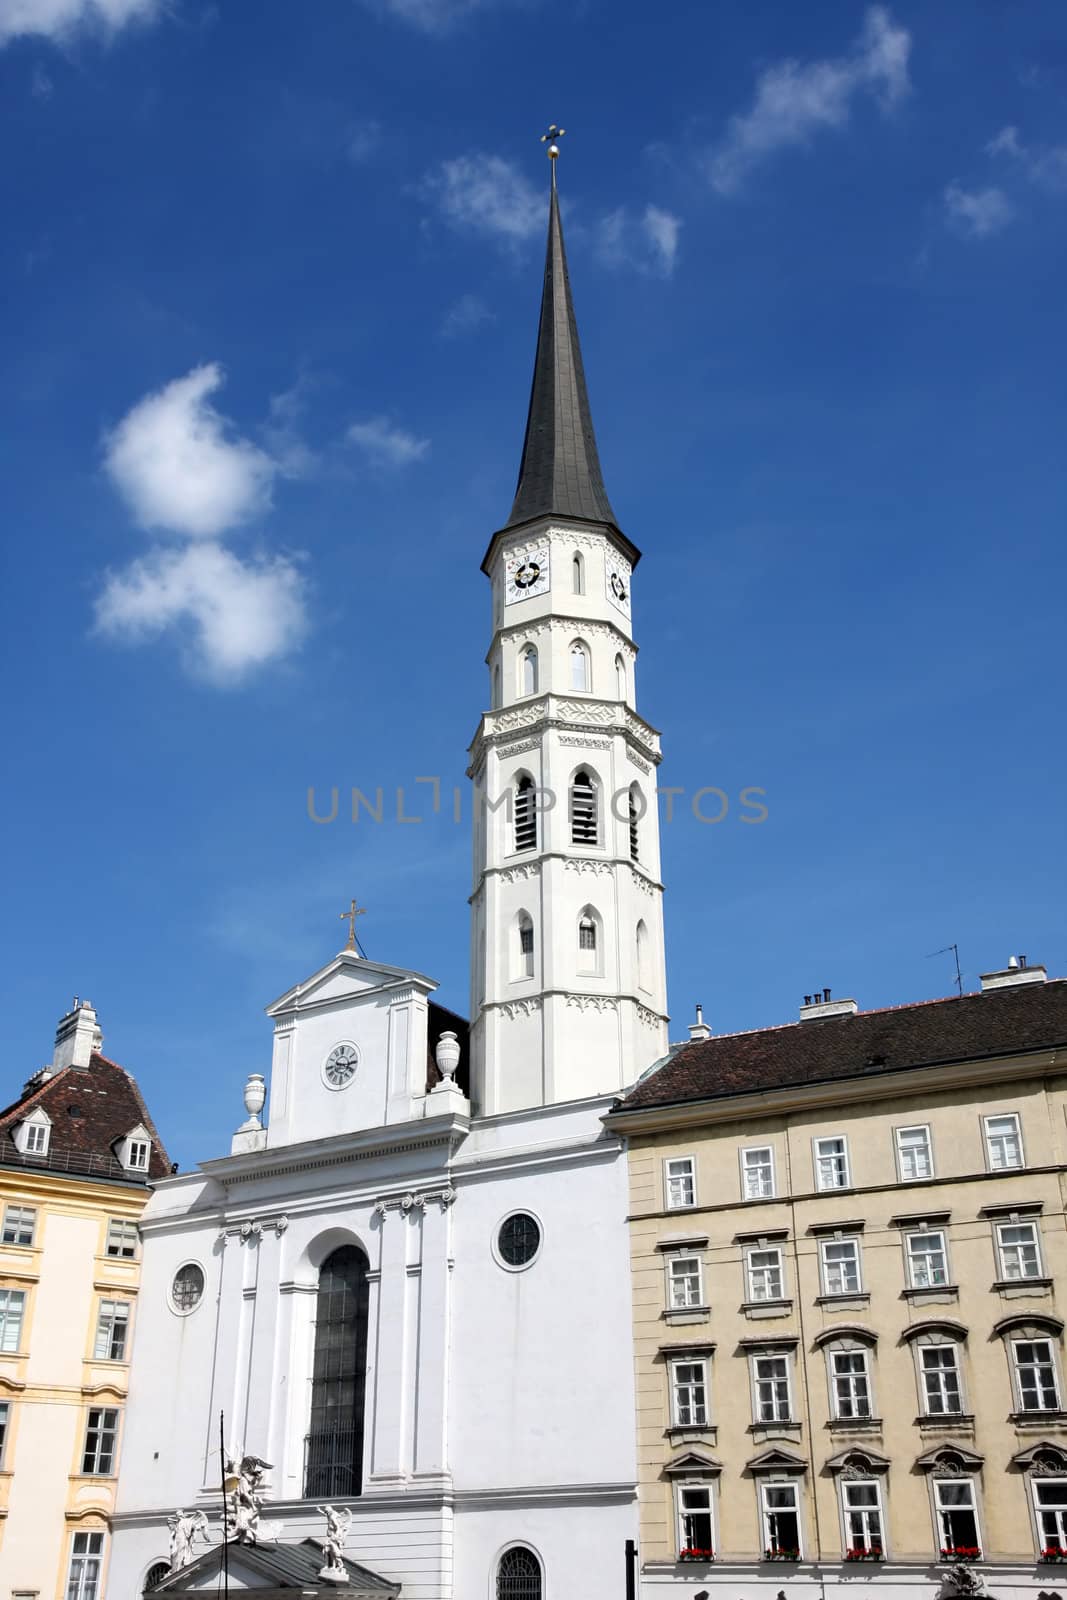 St. Michael's Church (Michaelerkirche) in Vienna, Austria by vladacanon